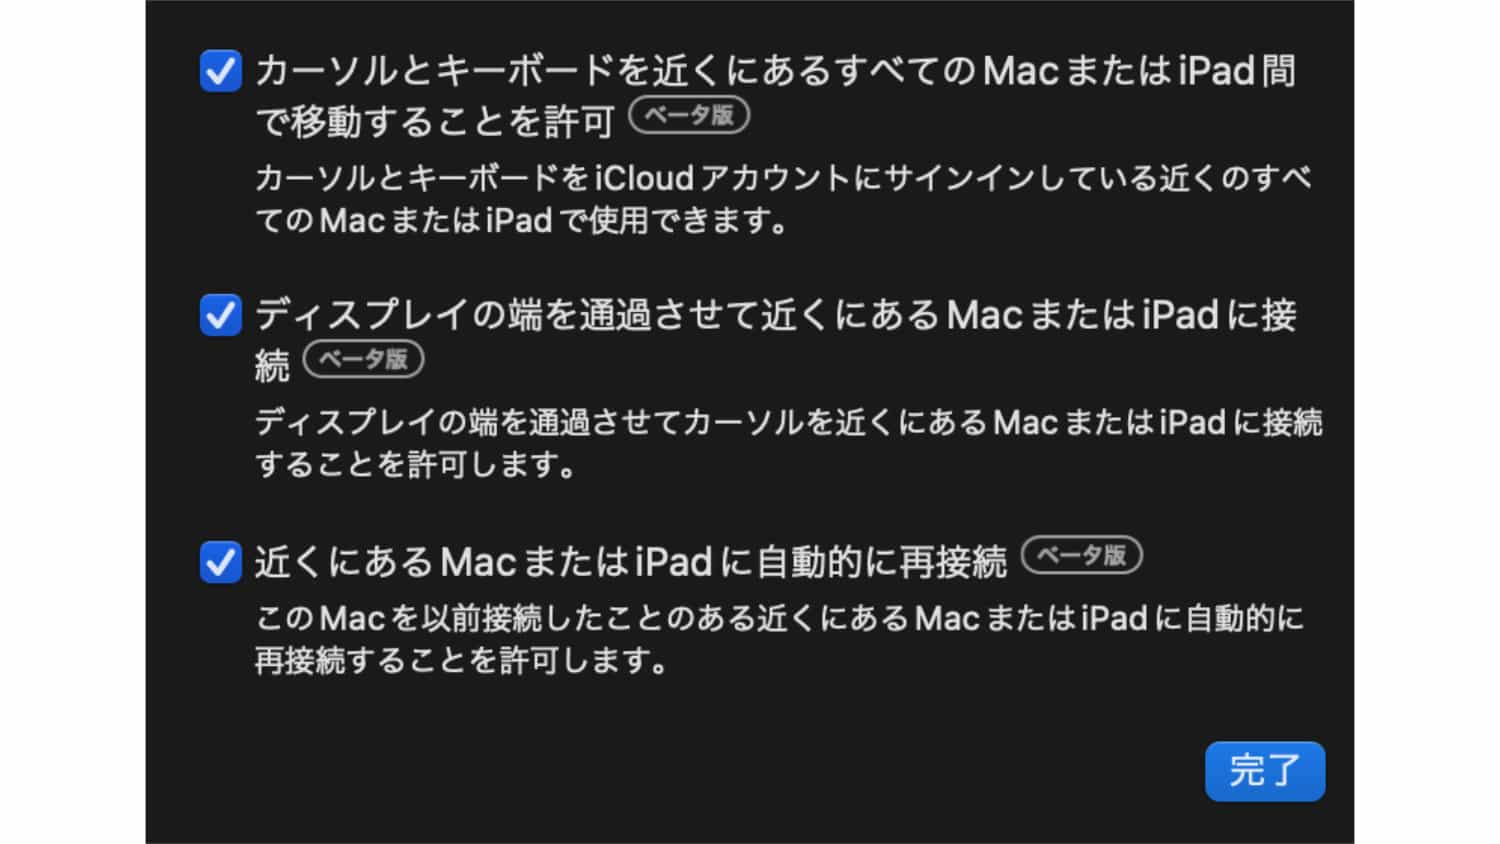 Mac の設定